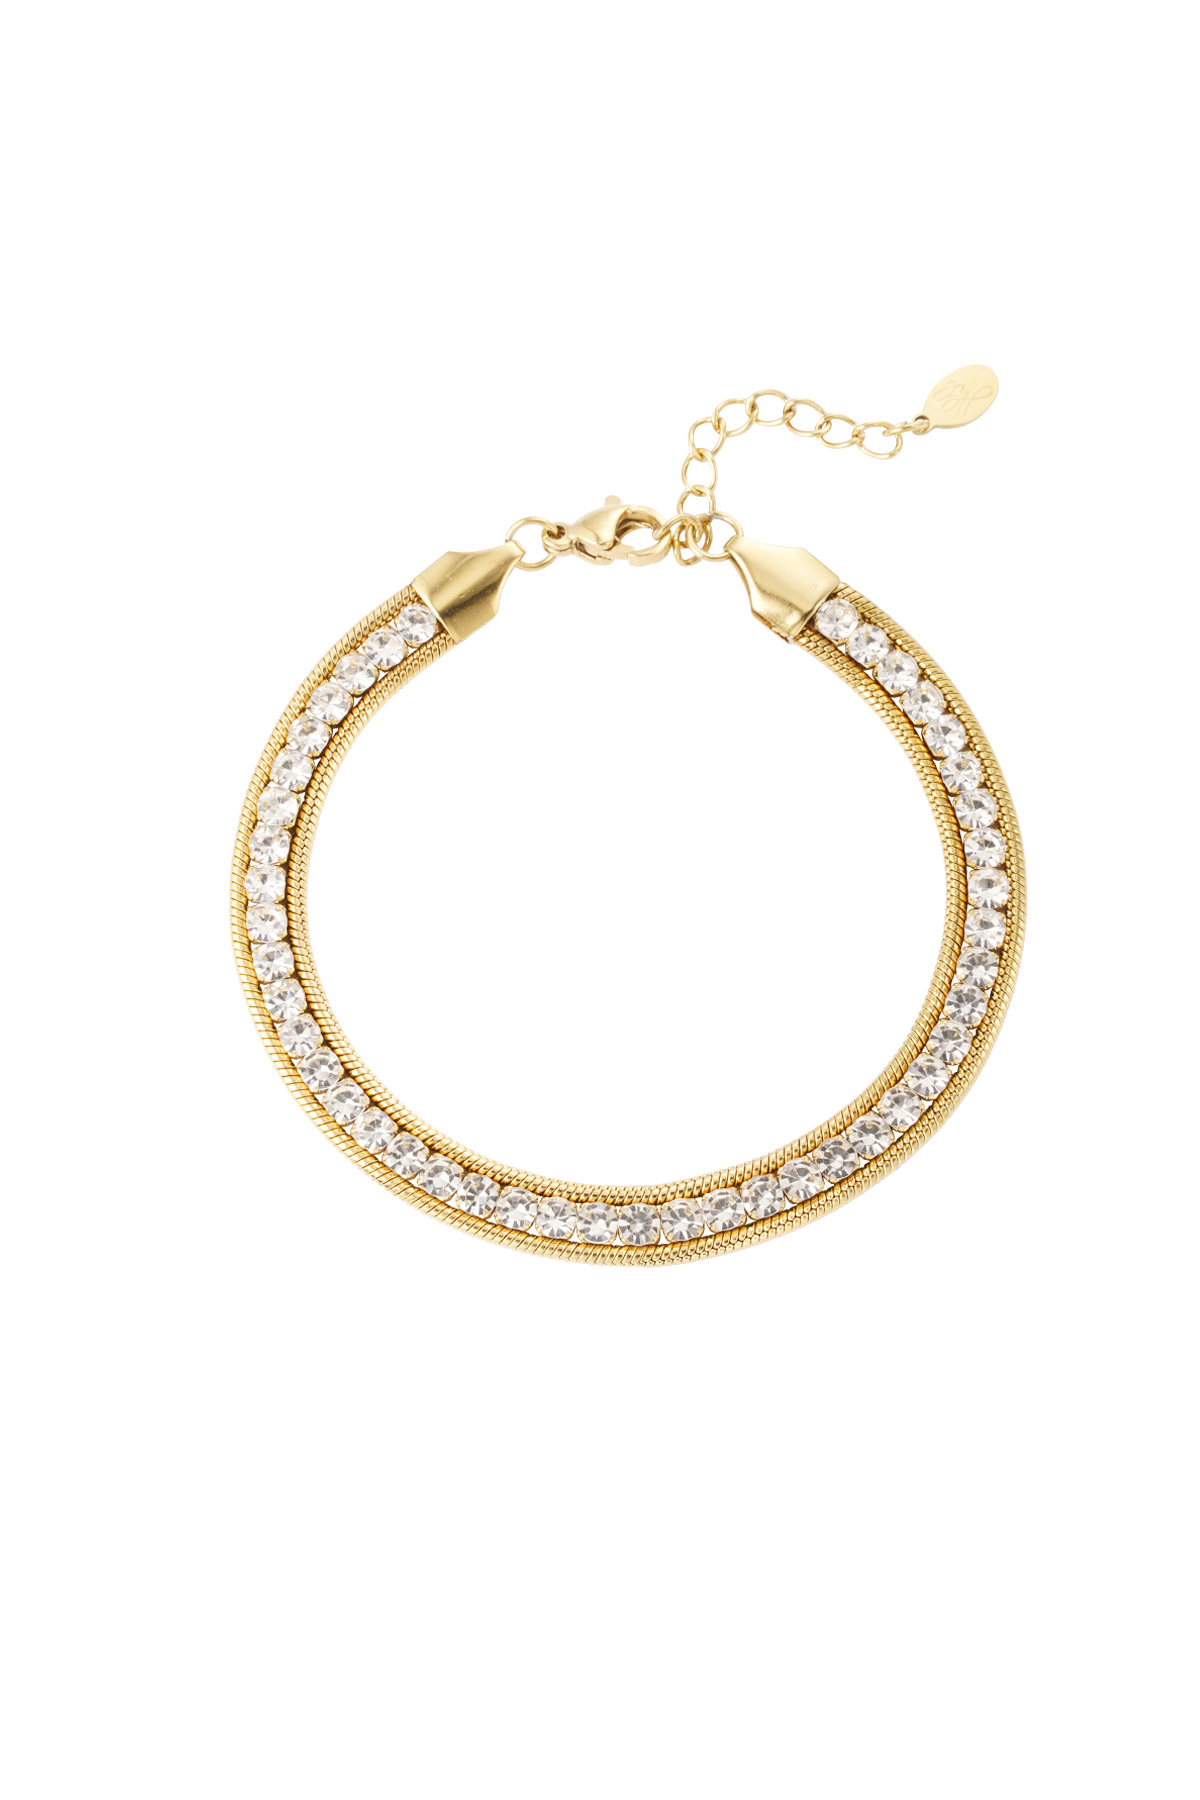 Bling bracelet - gold